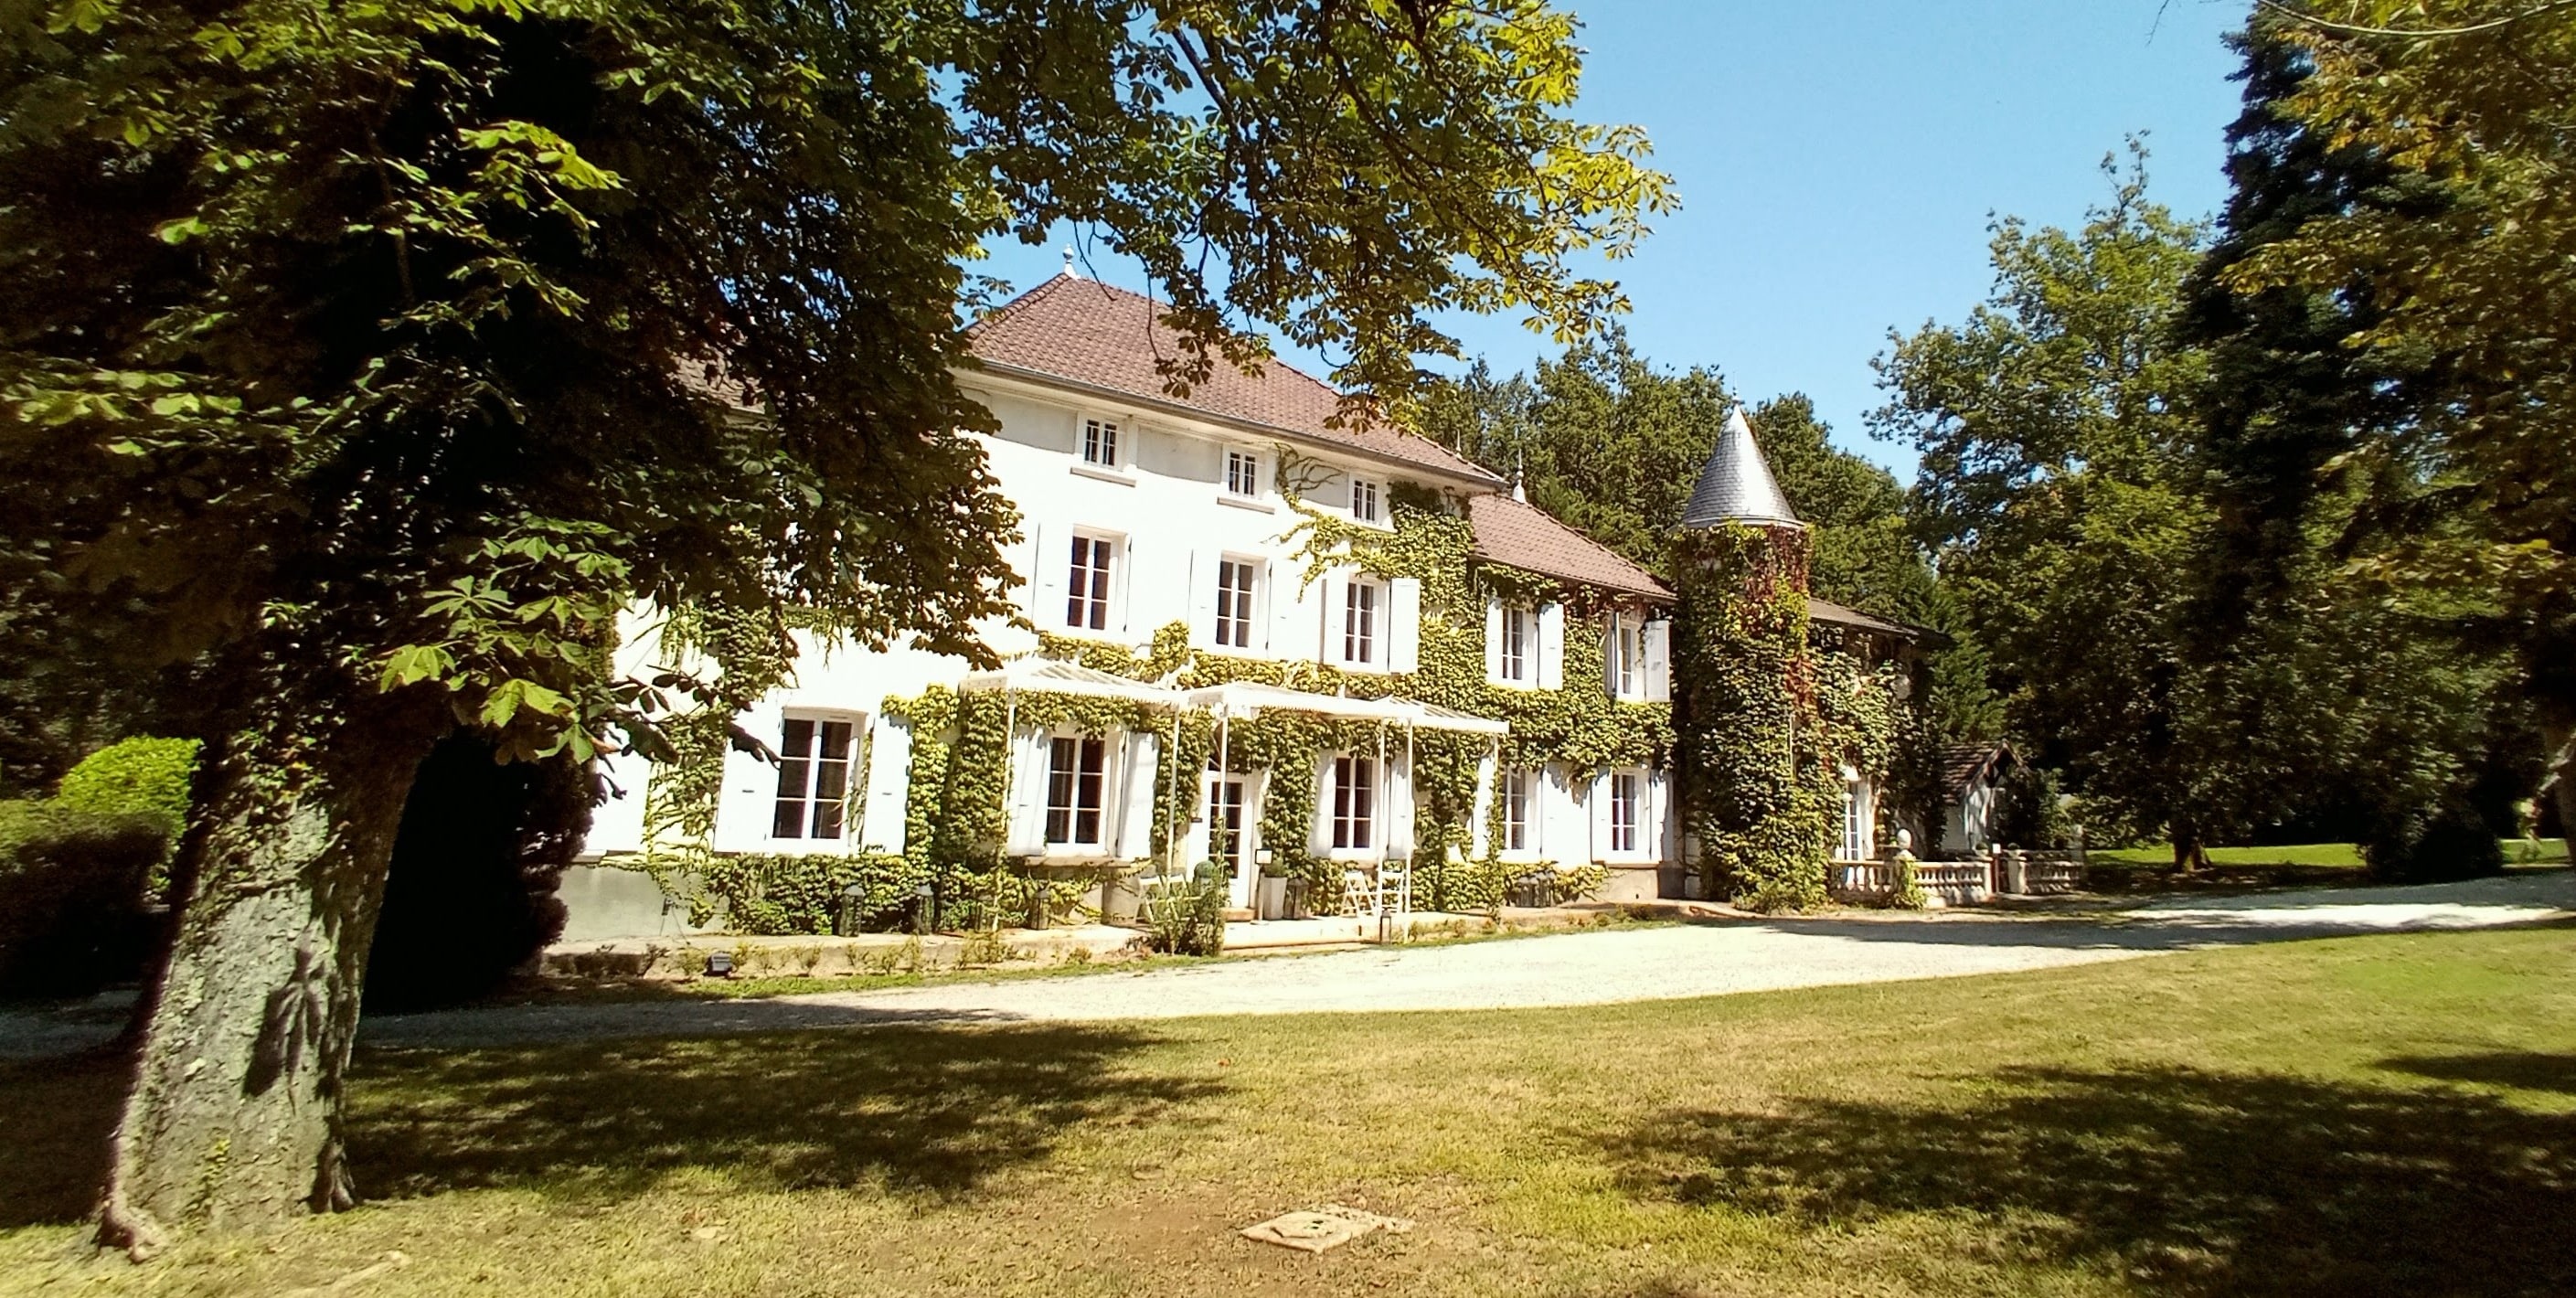 Château des Ayes